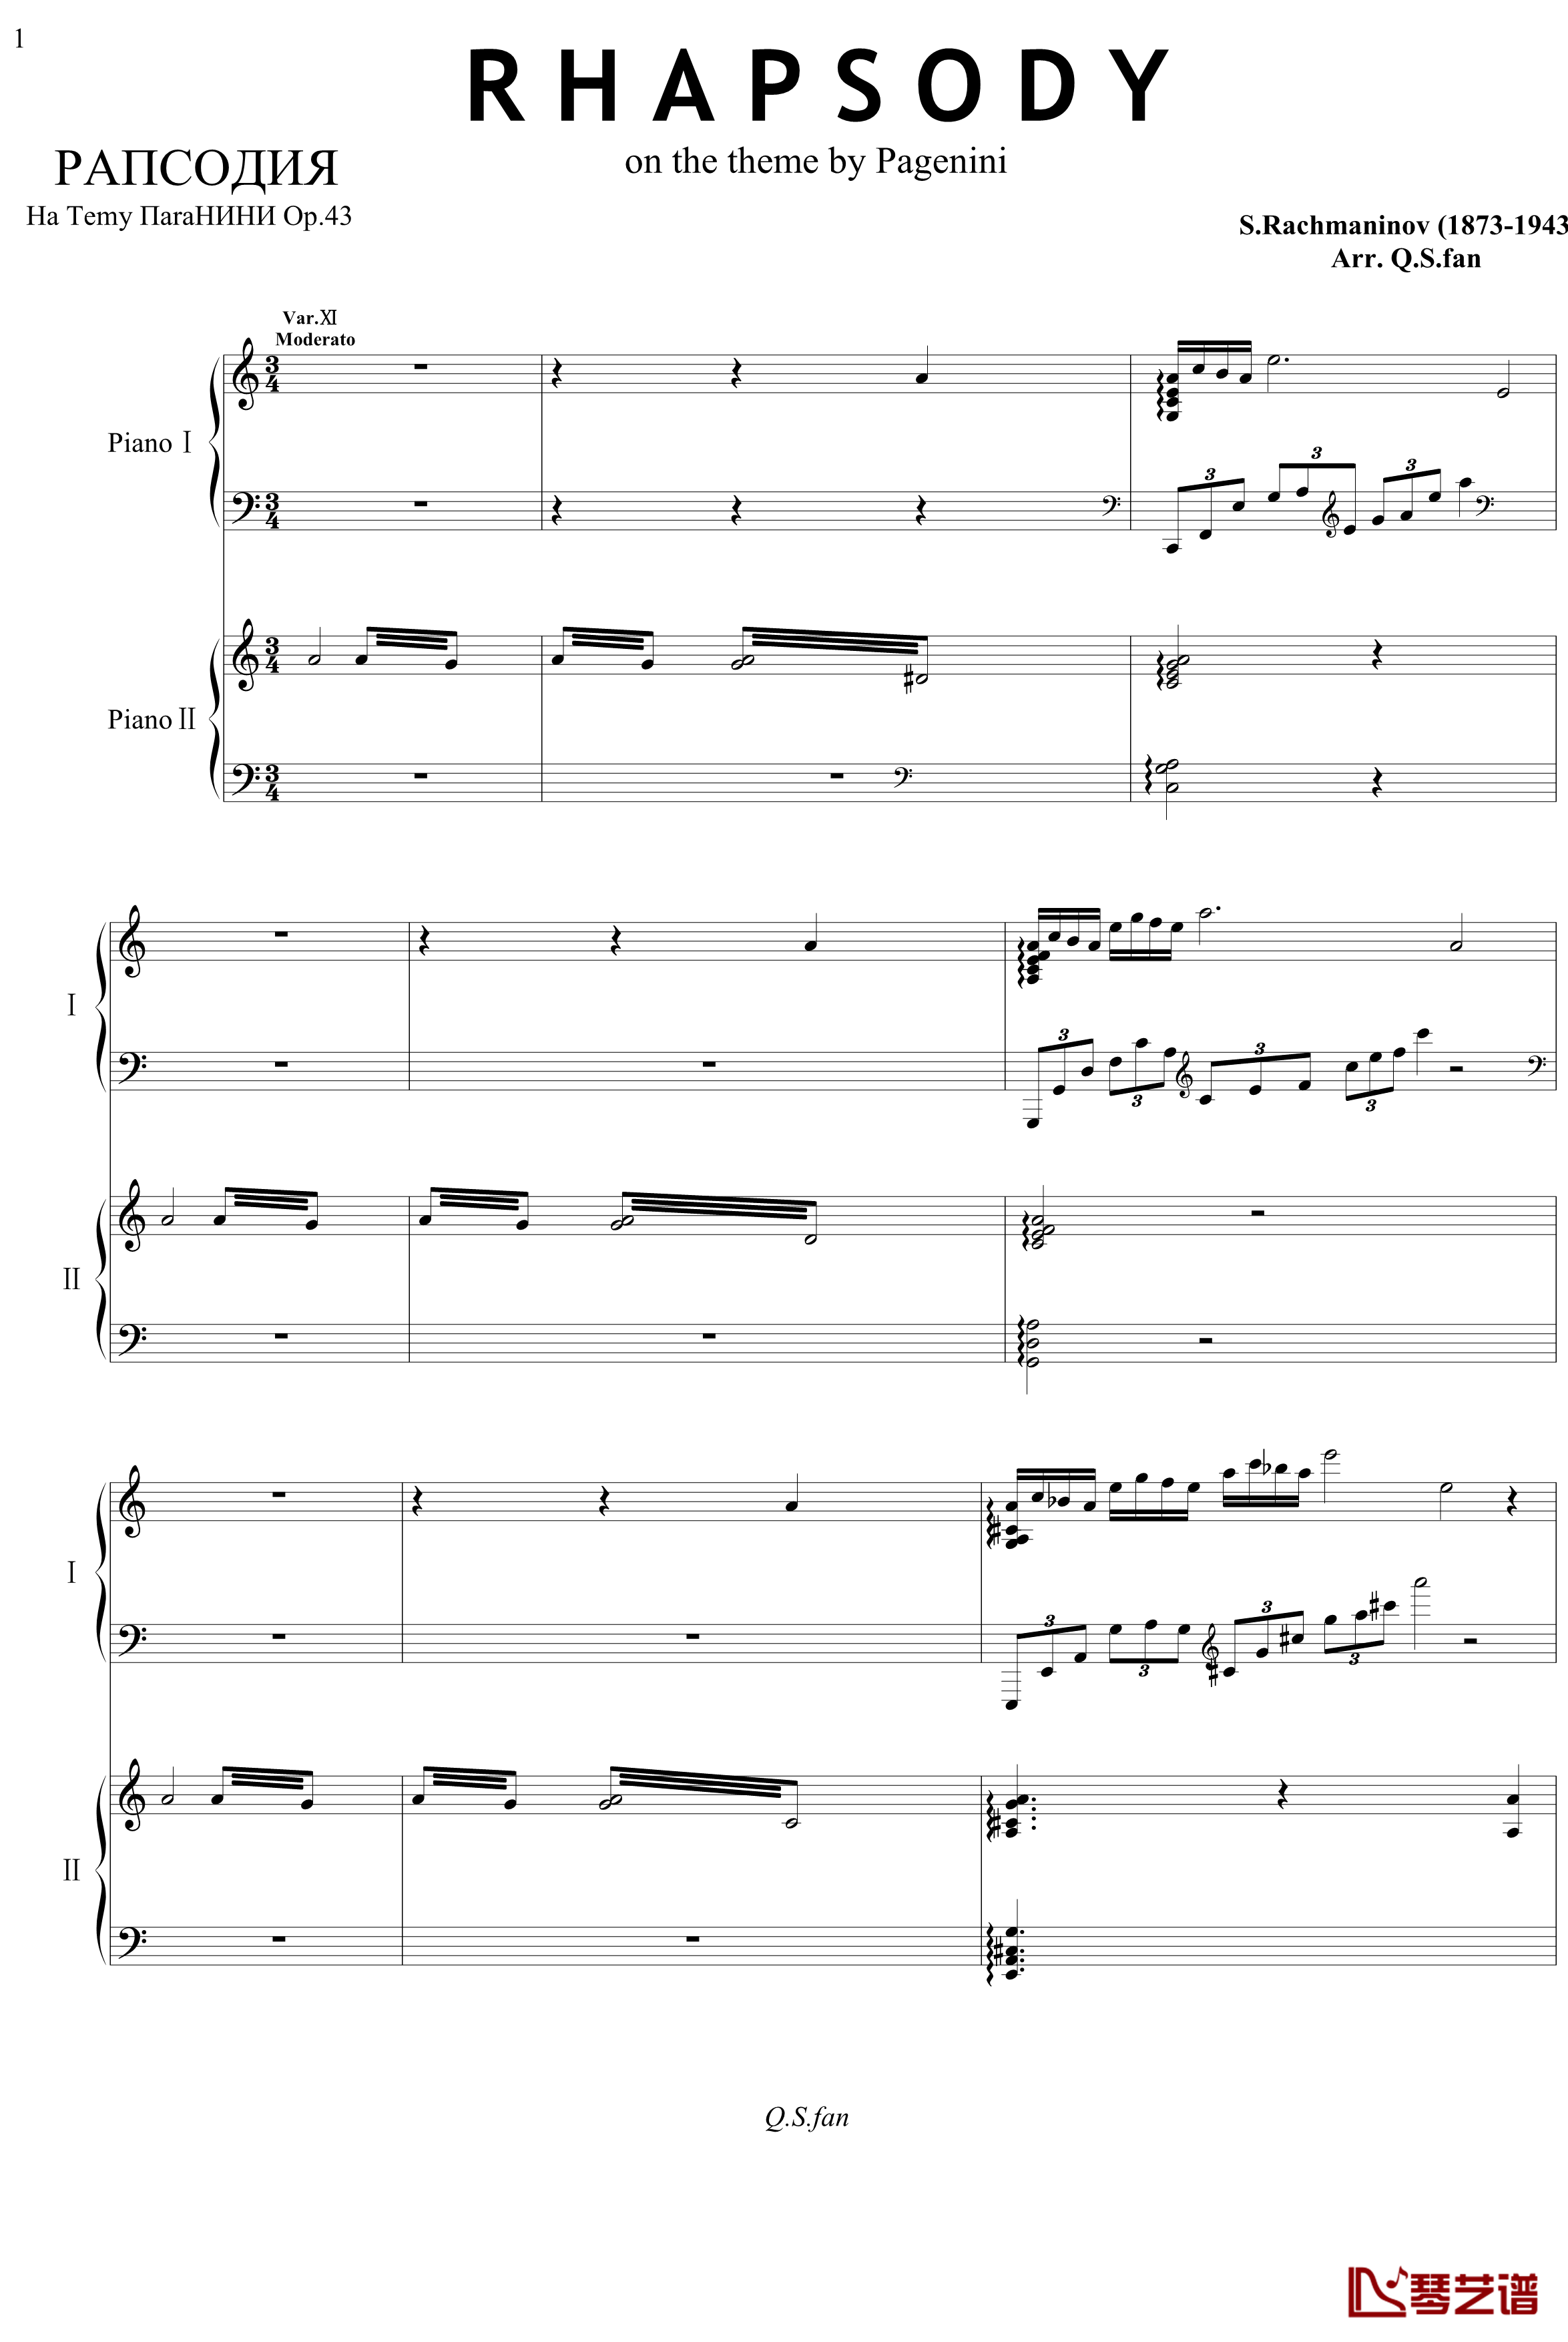 帕格尼尼主题狂想曲钢琴谱-11~18变奏-拉赫马尼若夫1